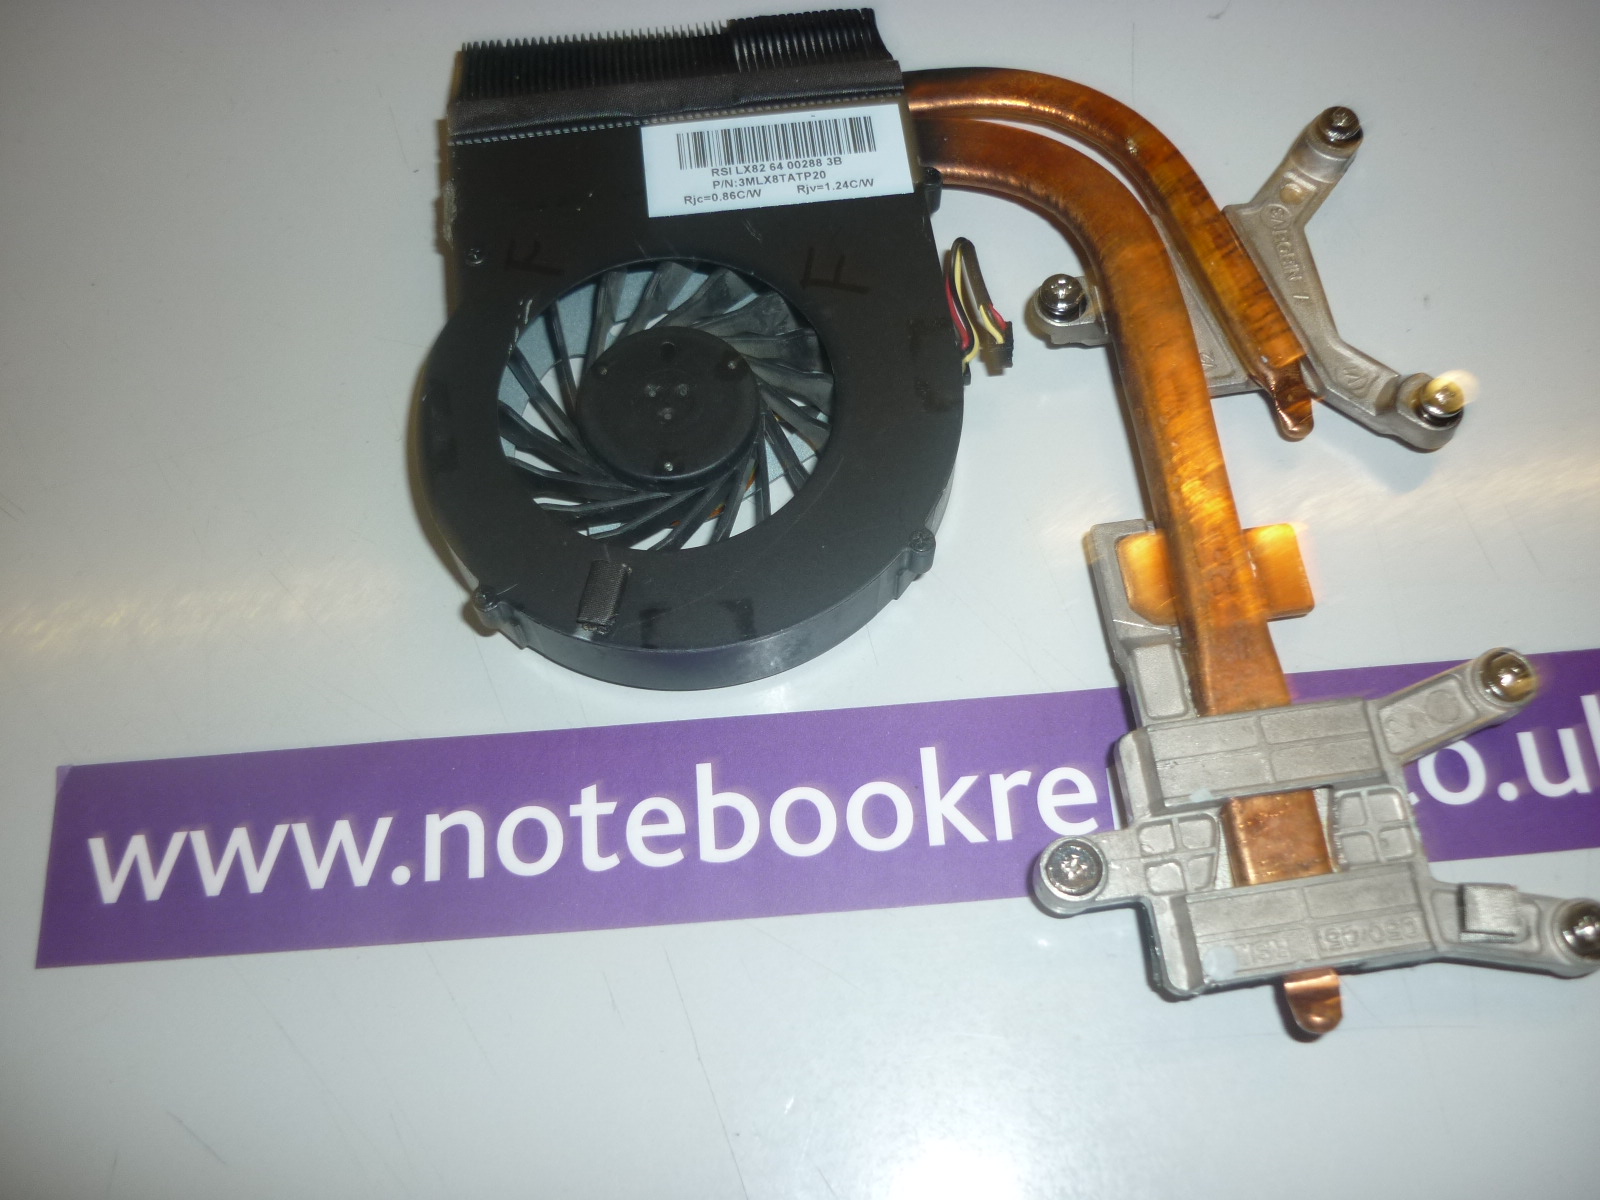 DV6-6035 heatsink and fan